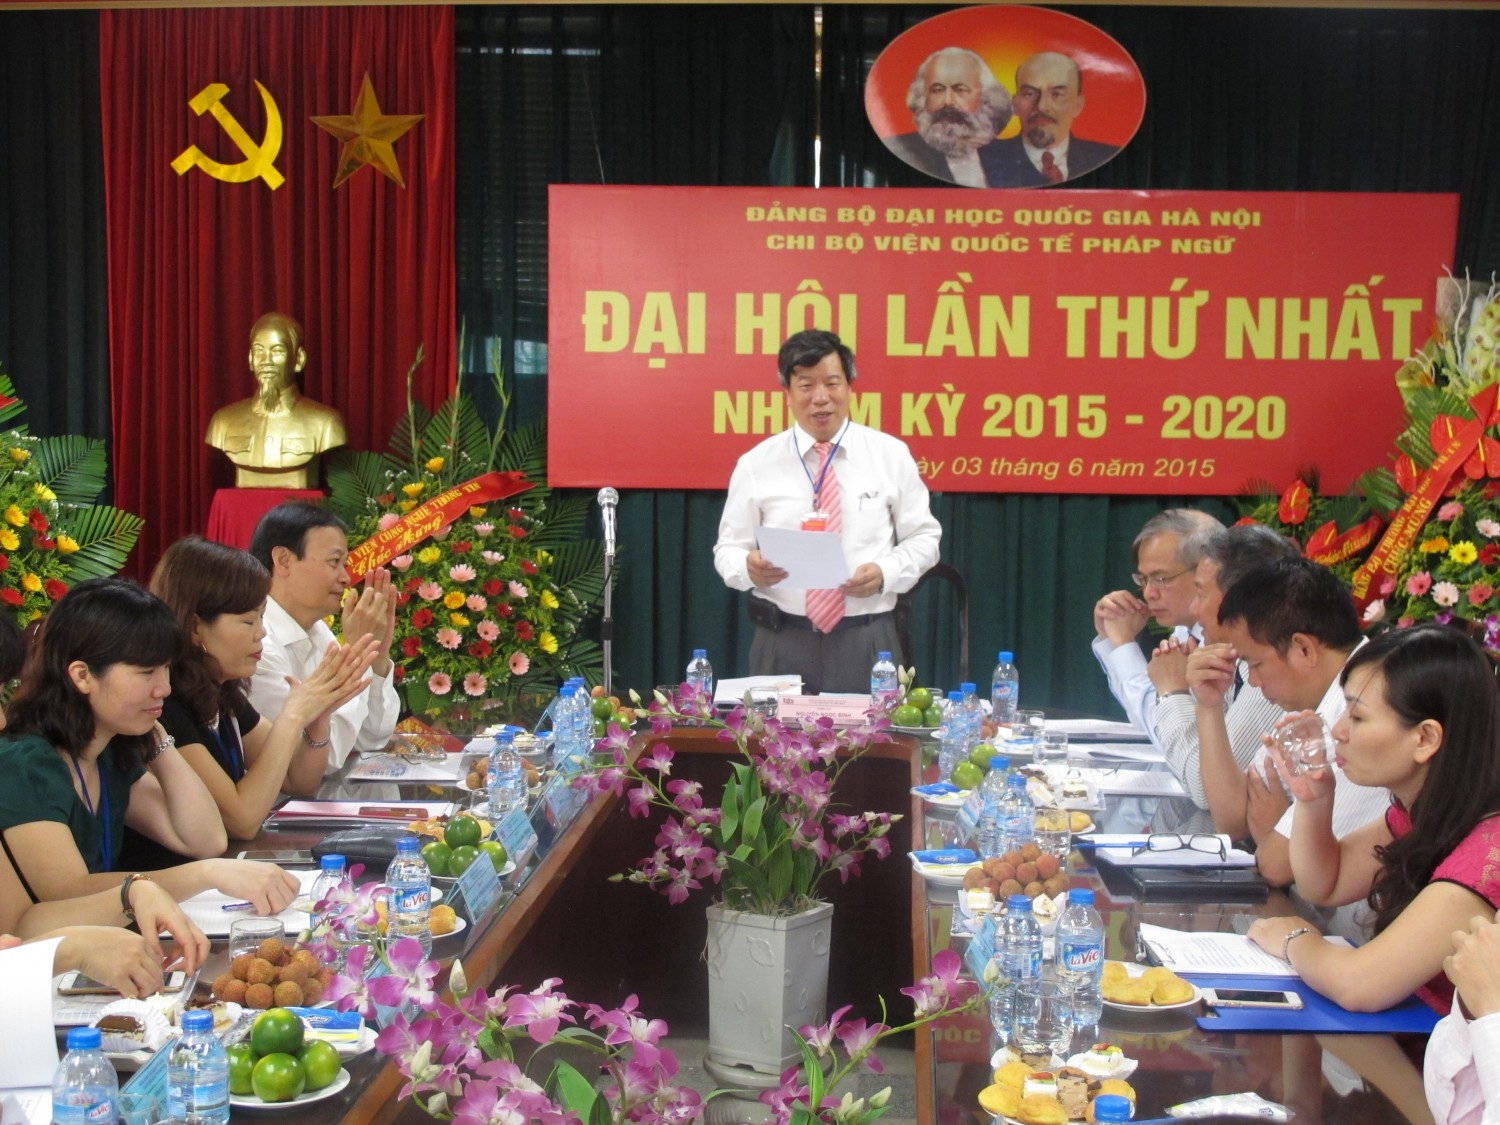 Đồng chí Nguyễn Ngọc Bình trình bày Báo cáo chính trị tại Đại hội